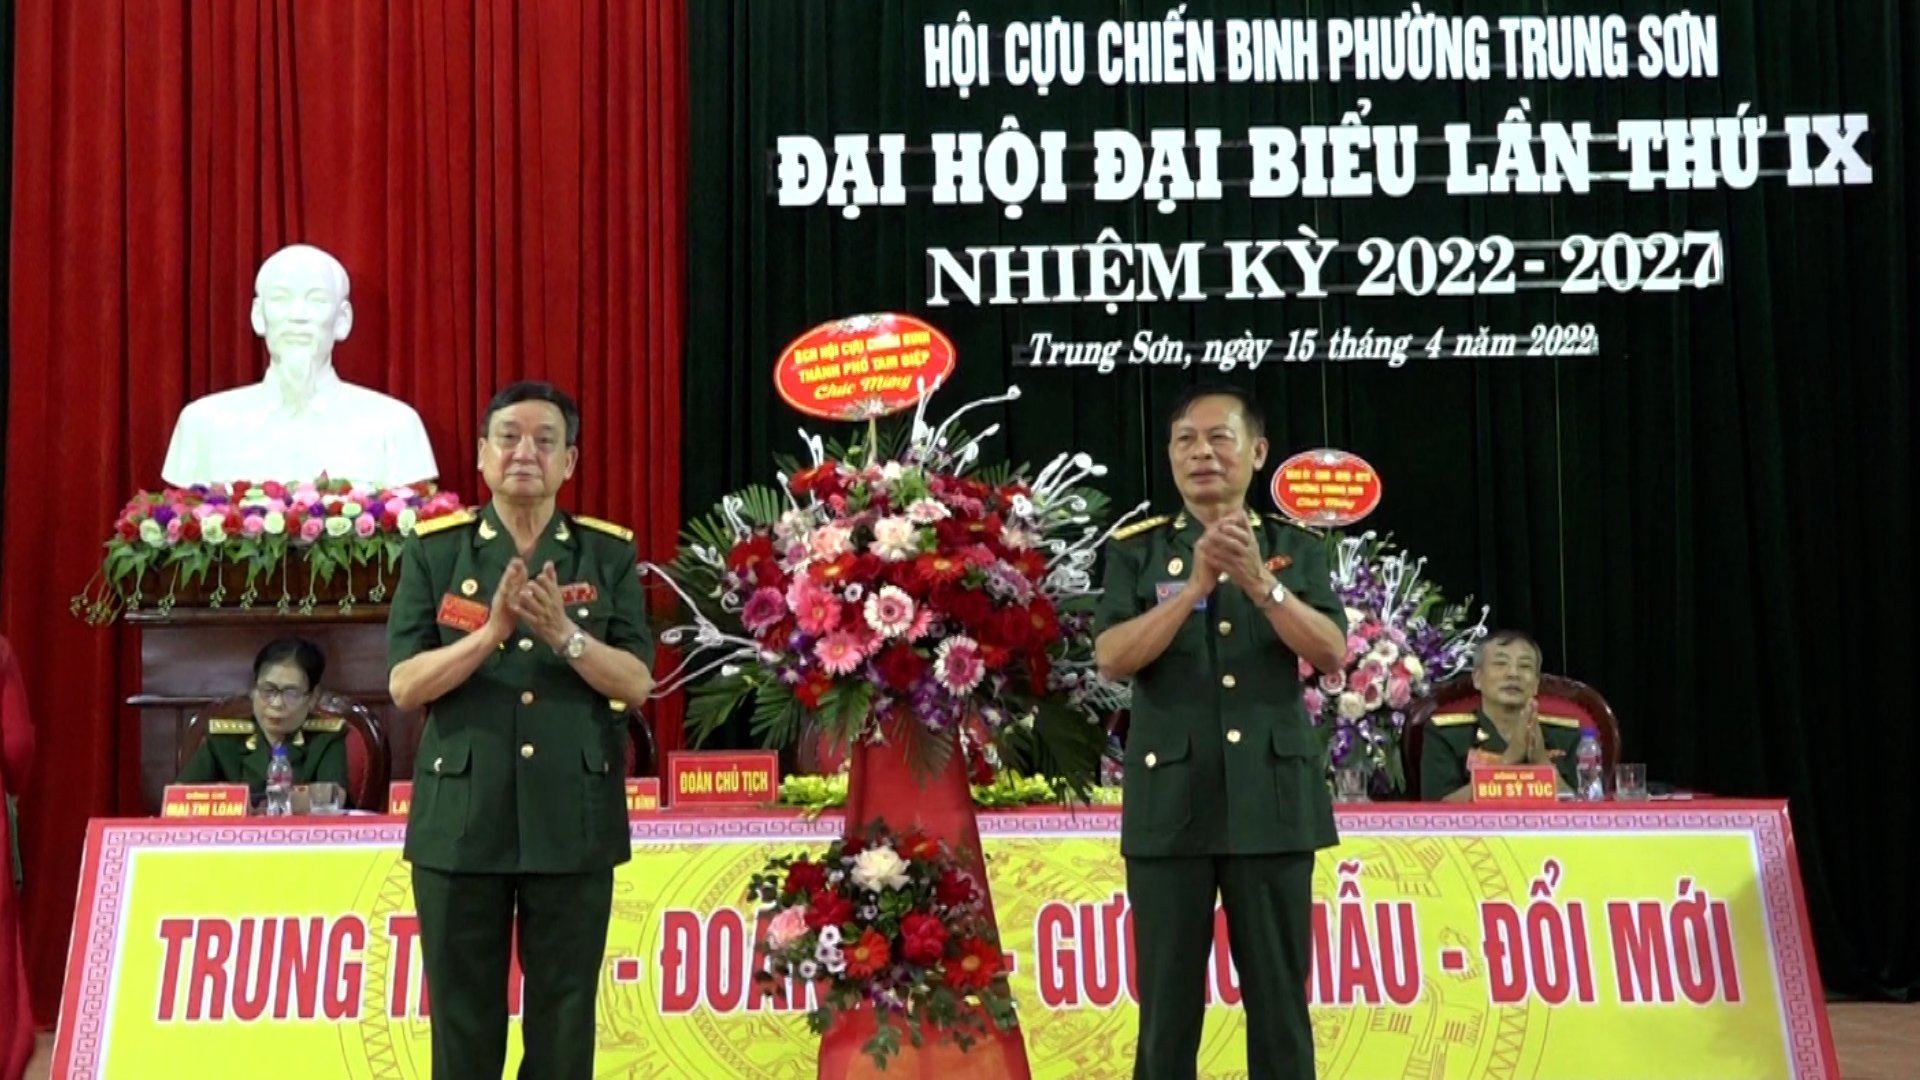 Hội CCB phường Trung Sơn tổ chức Đại hội đại biểu lần thứ IX nhiệm kỳ 2022-2027